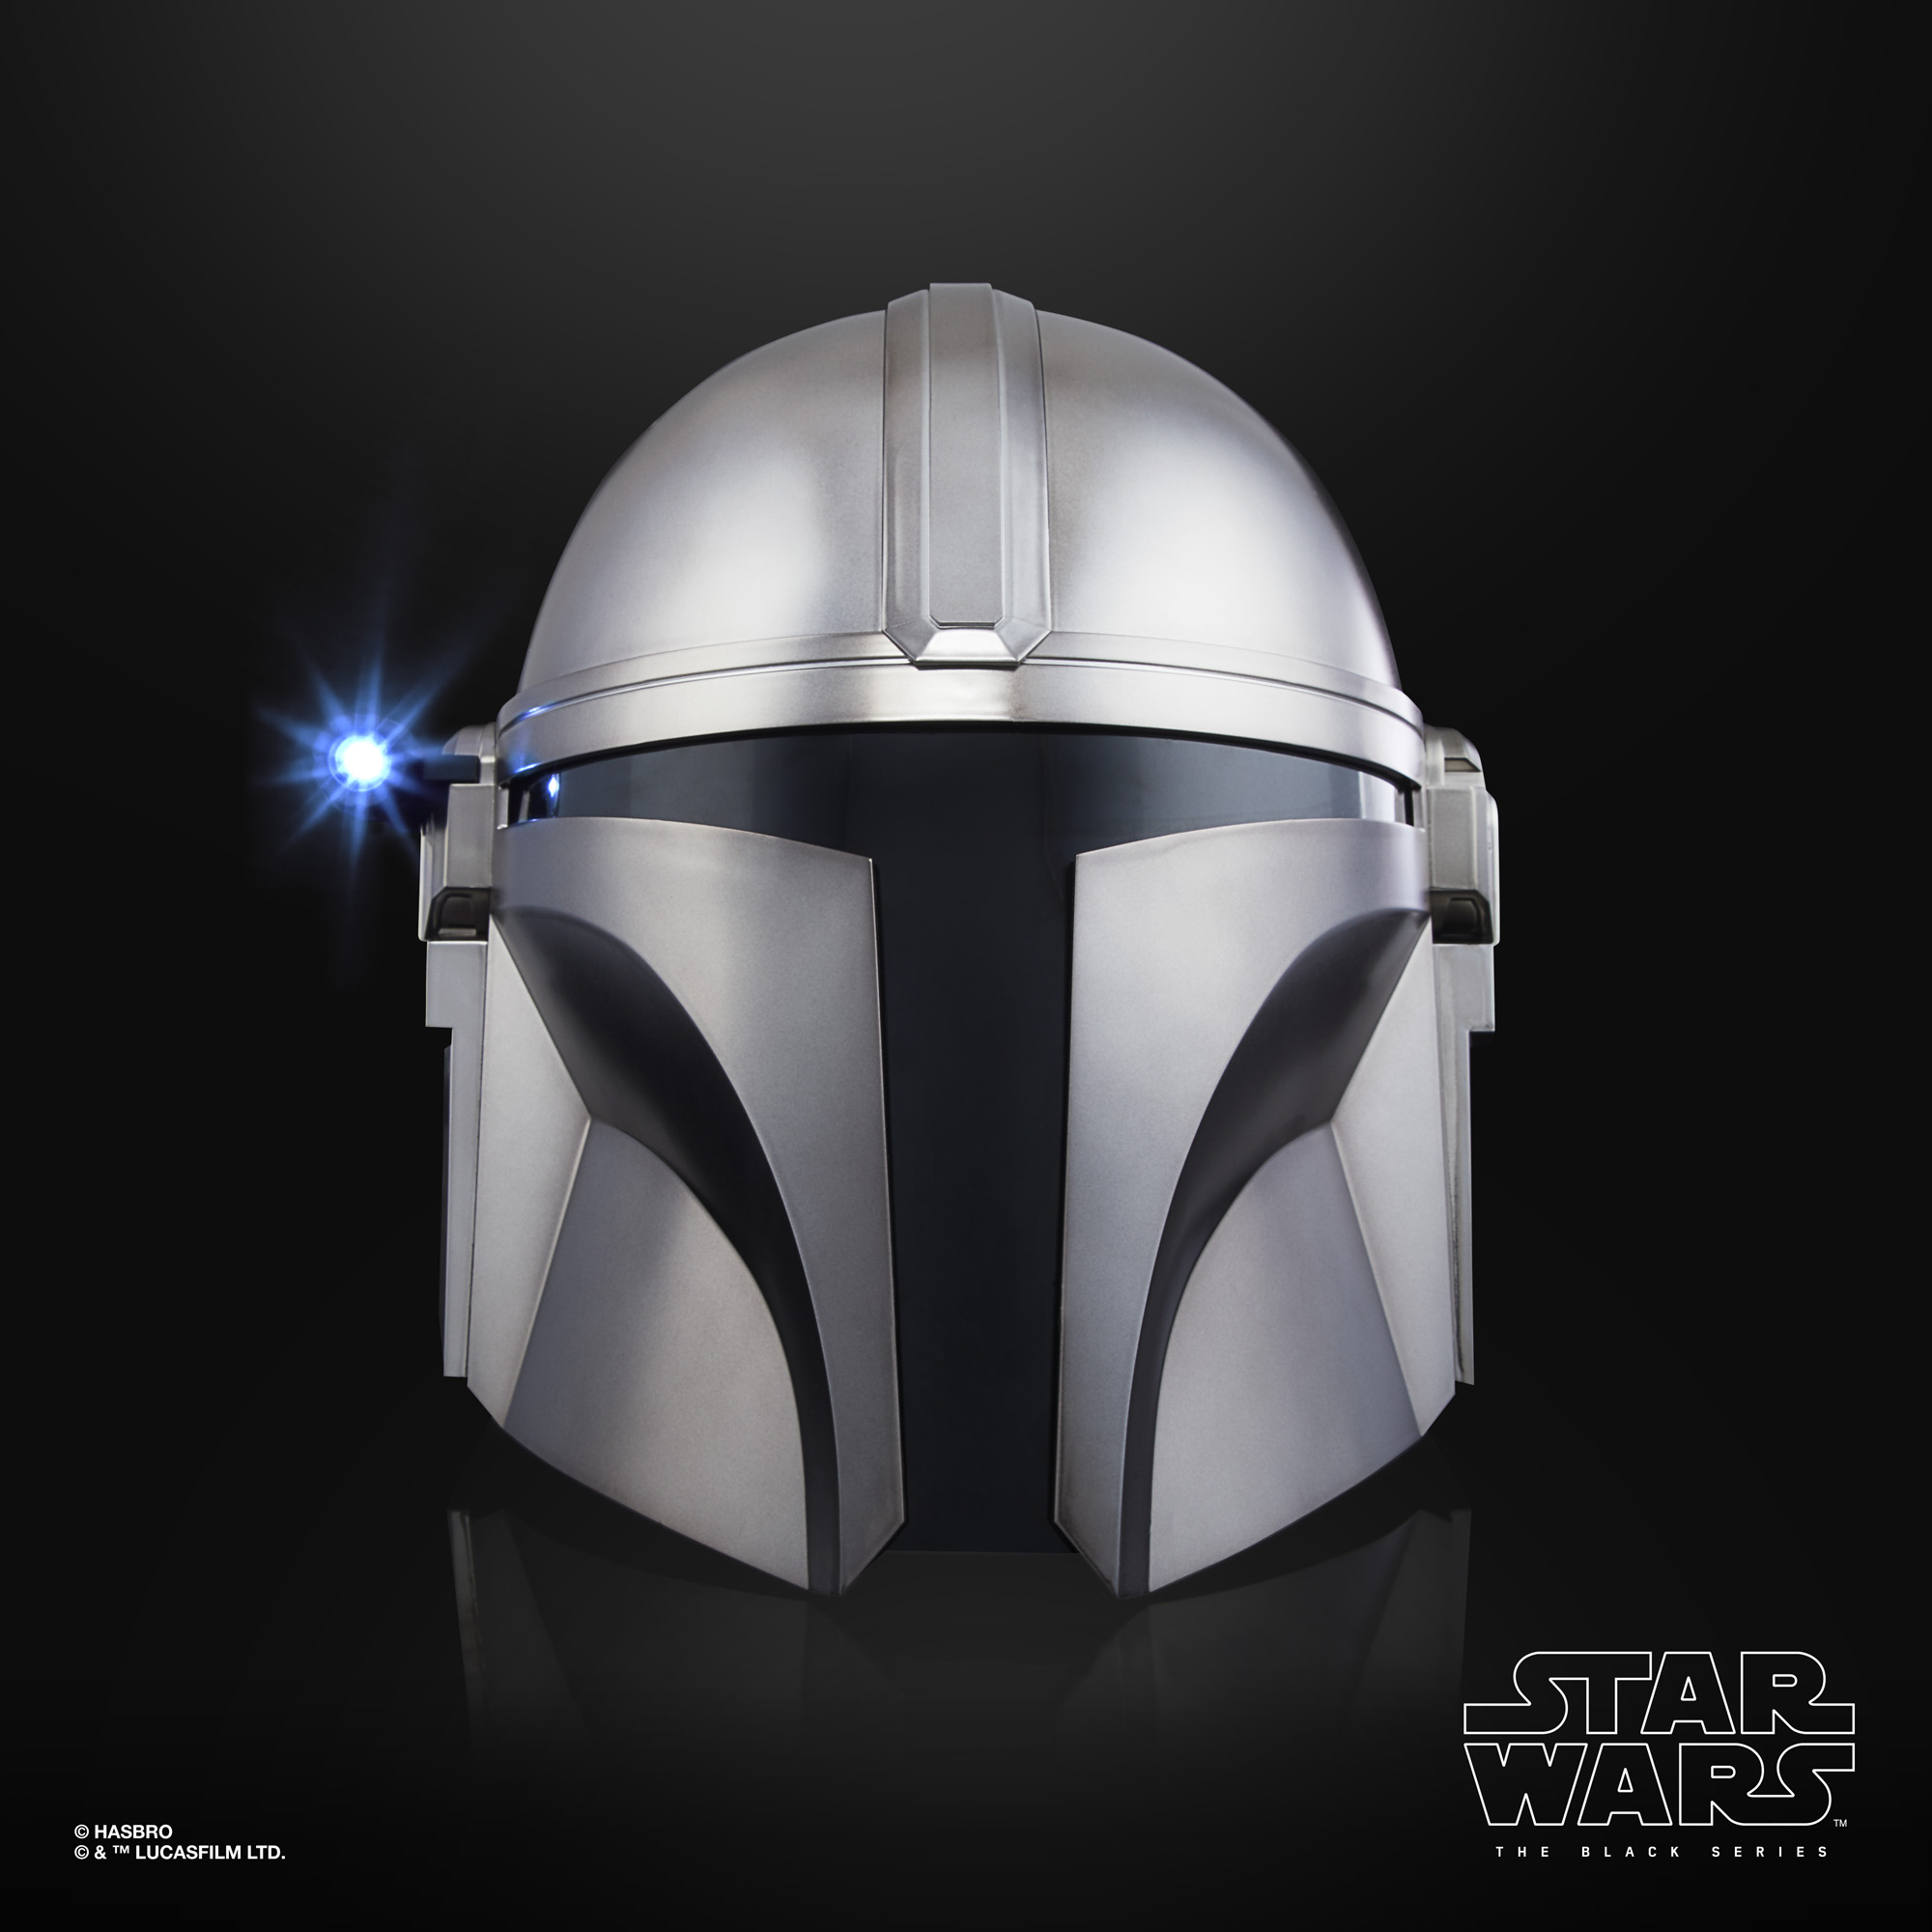 Import!!! Star Wars The Black Series The Mandalorian Helmet F04935L0 5010993800933